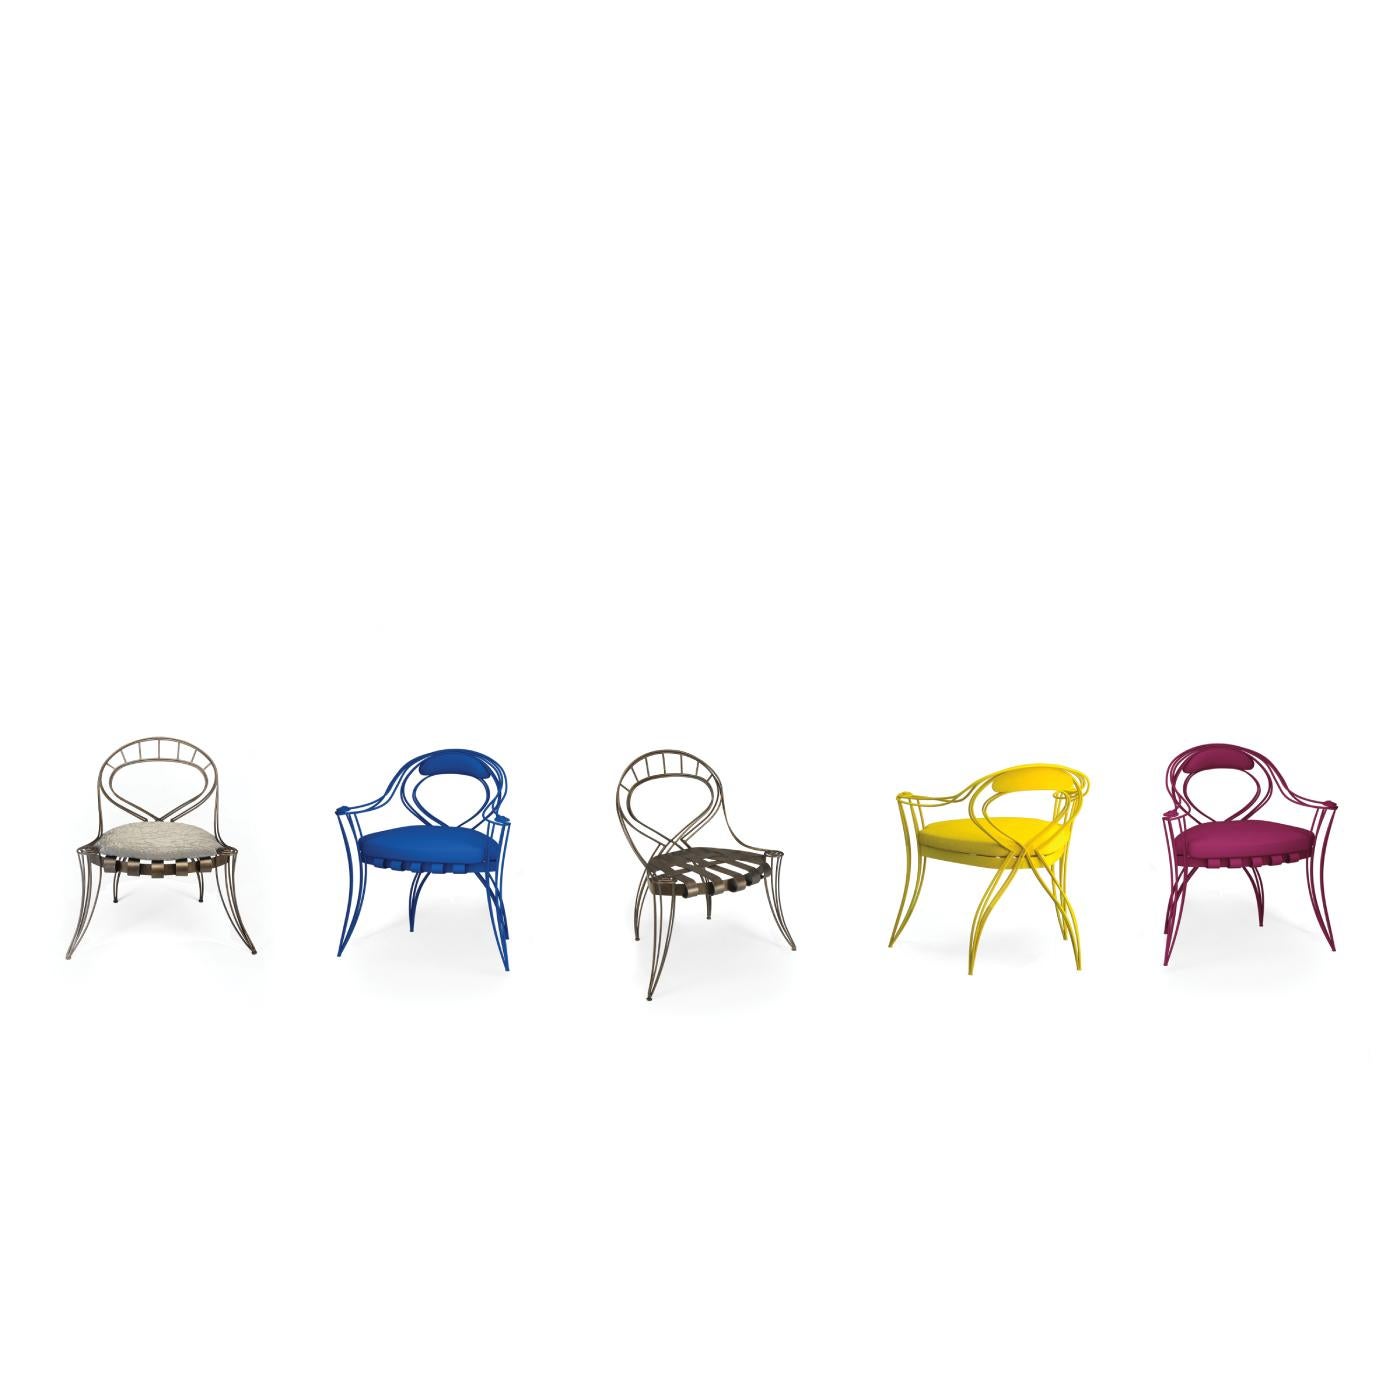 Dieser atemberaubende Stuhl zeichnet sich durch eine offene und ätherische Silhouette aus, die Einfachheit, Komfort und Stabilität vermittelt. Das Gestell aus handgebogenen Eisenstäben mit ausgestellten Beinen und einer runden Rückenlehne, die